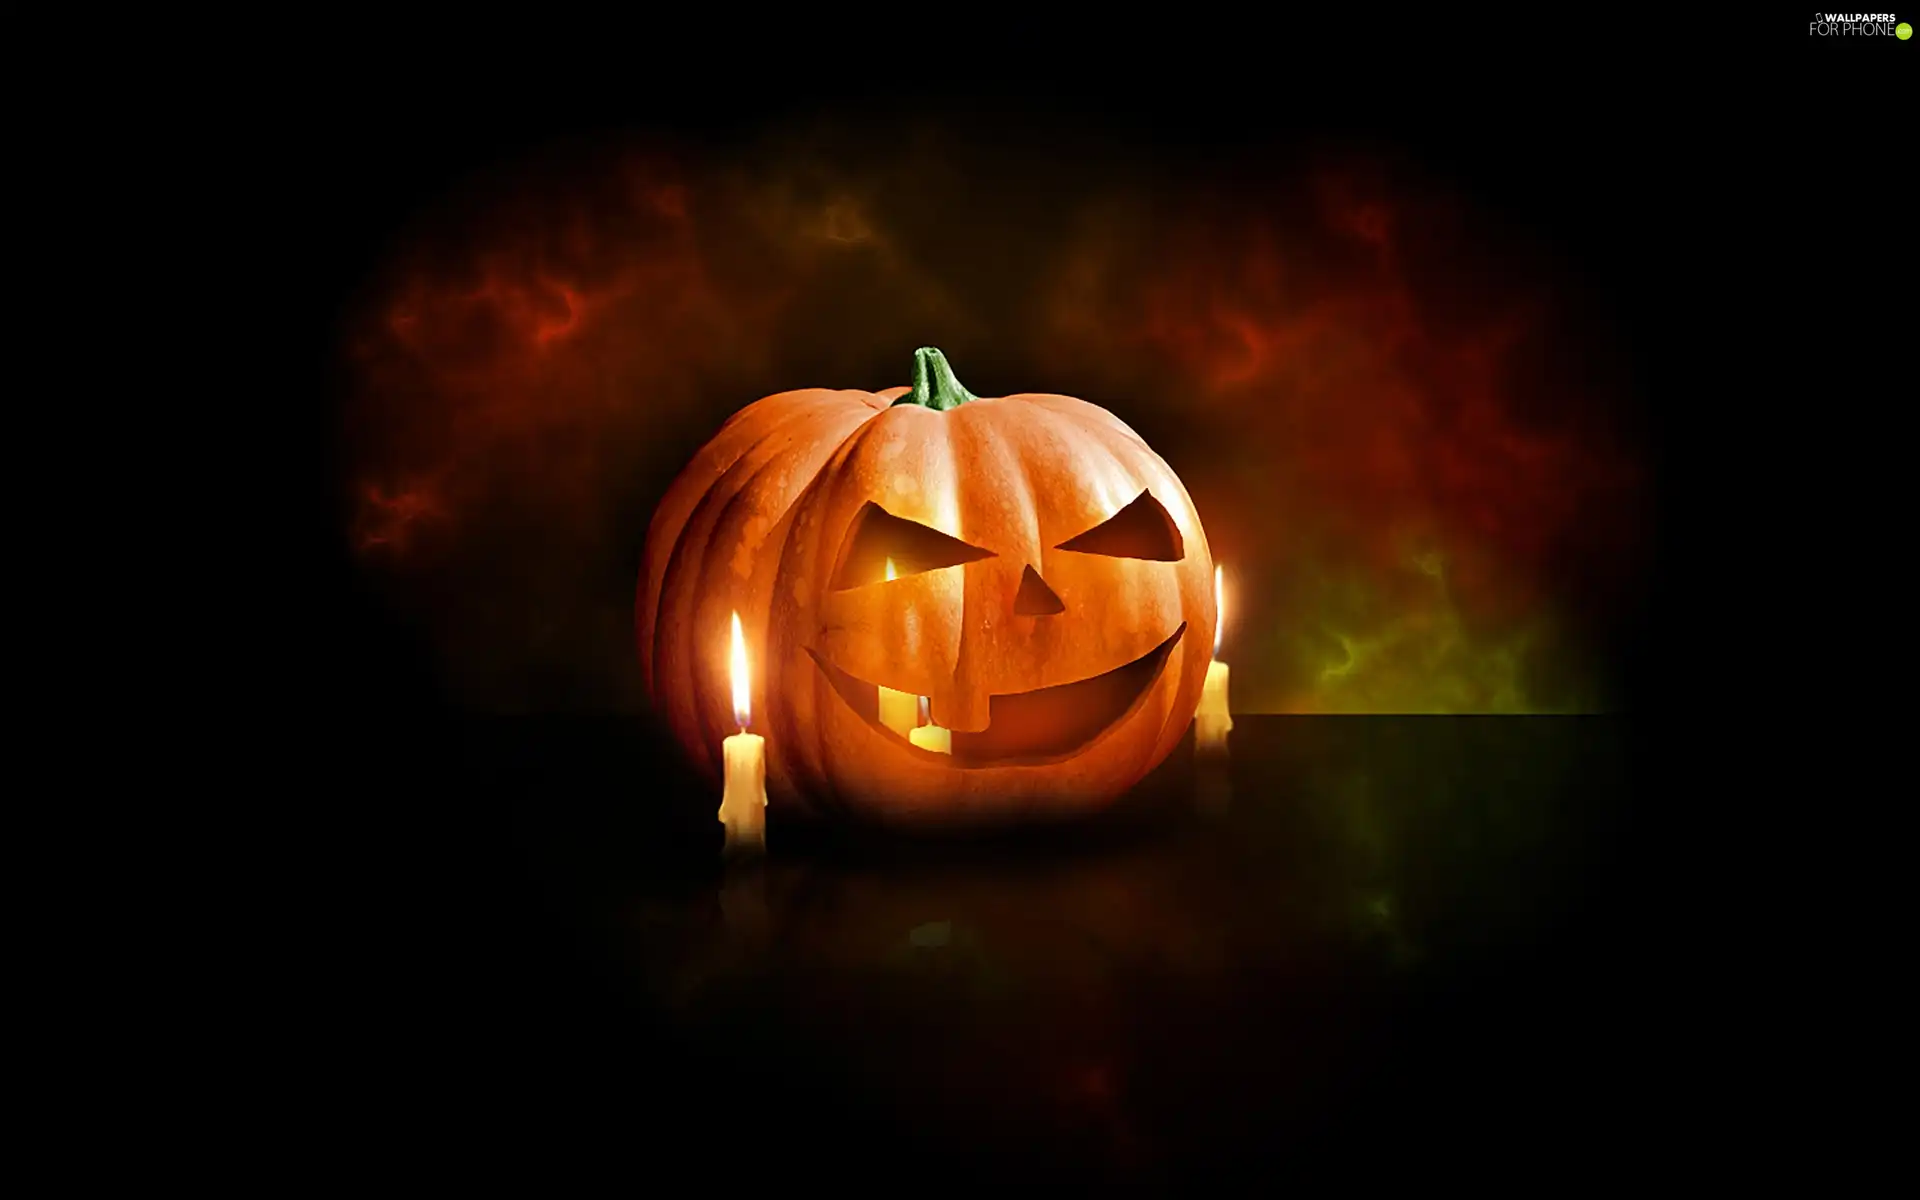 Candle, halloween, pumpkin